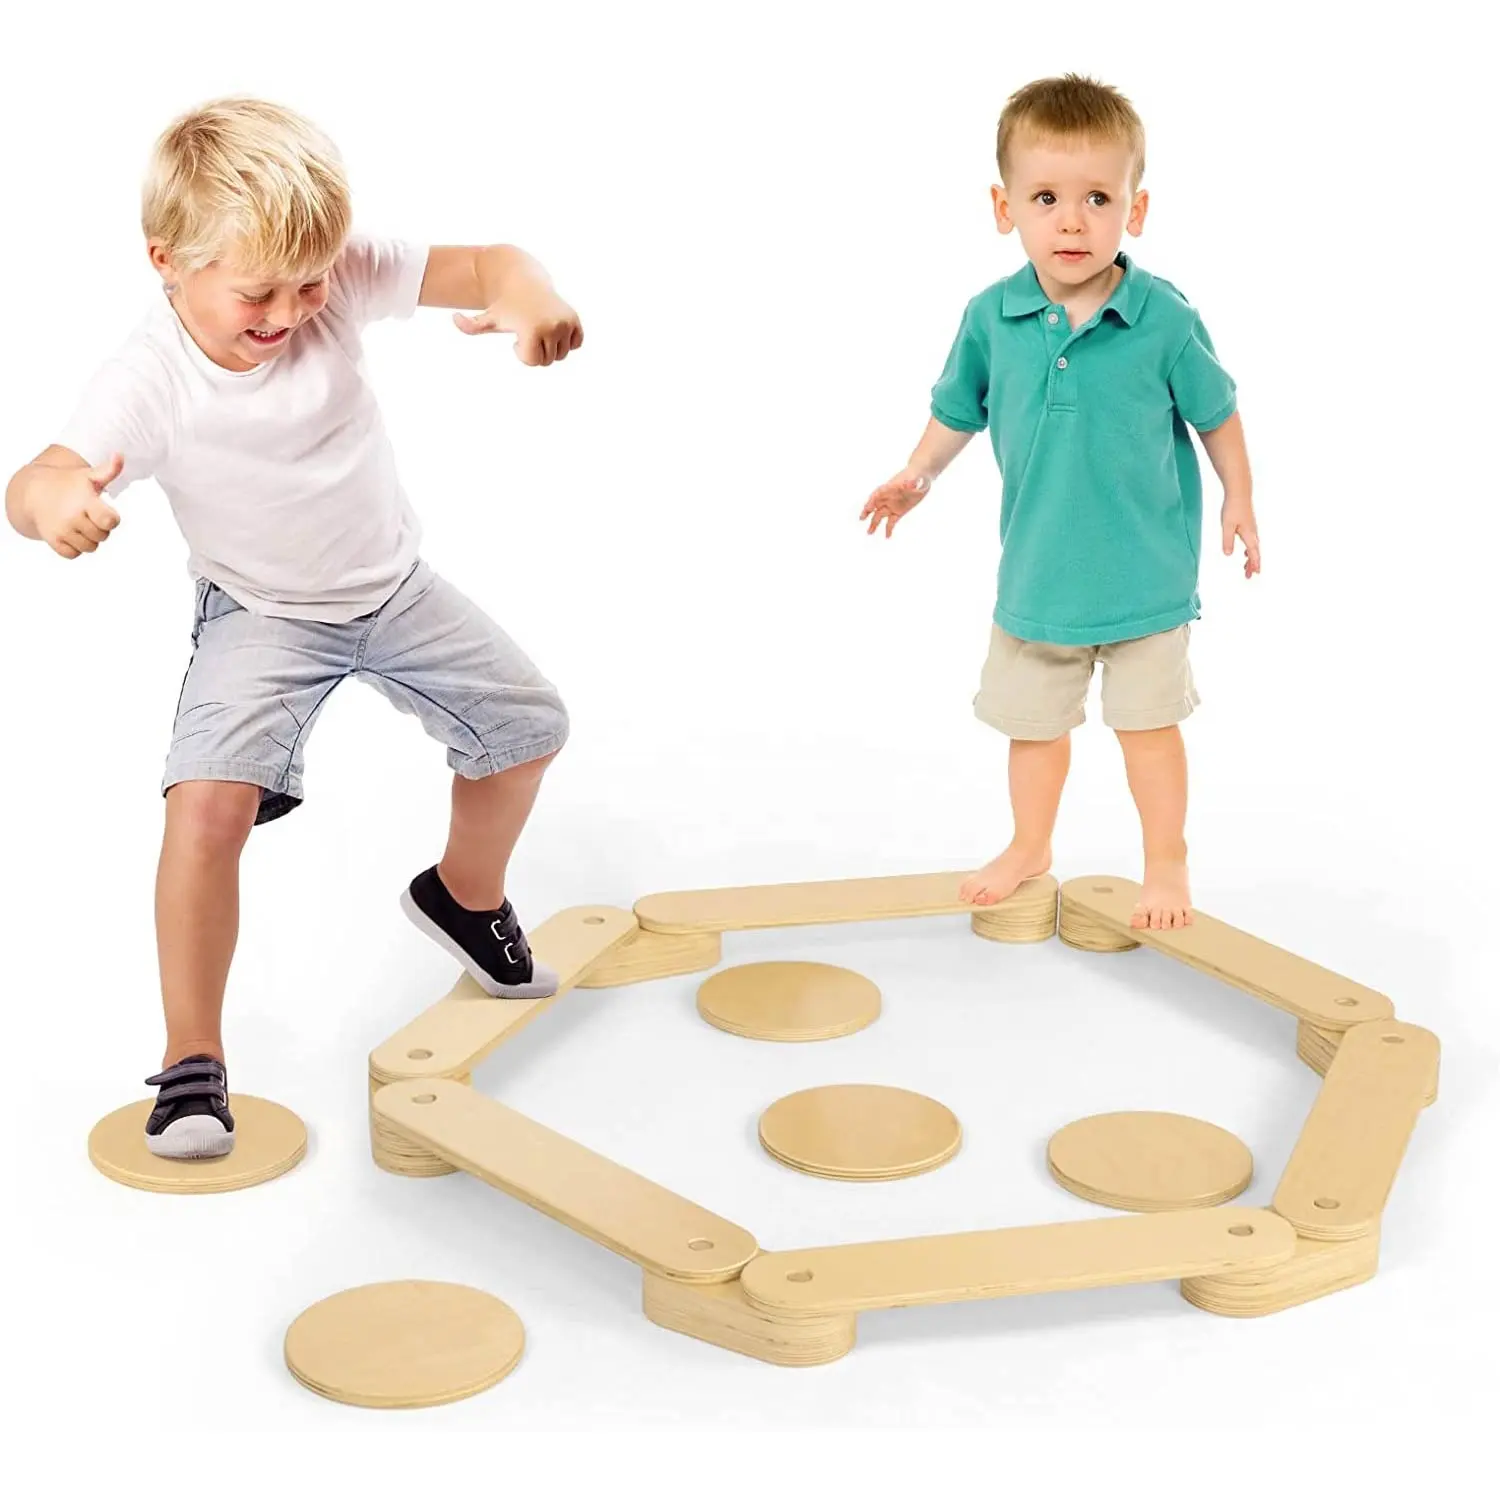 עץ איזון קרן דריכה אבנים לילדים מונטסורי פעוט נדנדה צעצועי ילדי תרגיל איזון מגרש משחקים